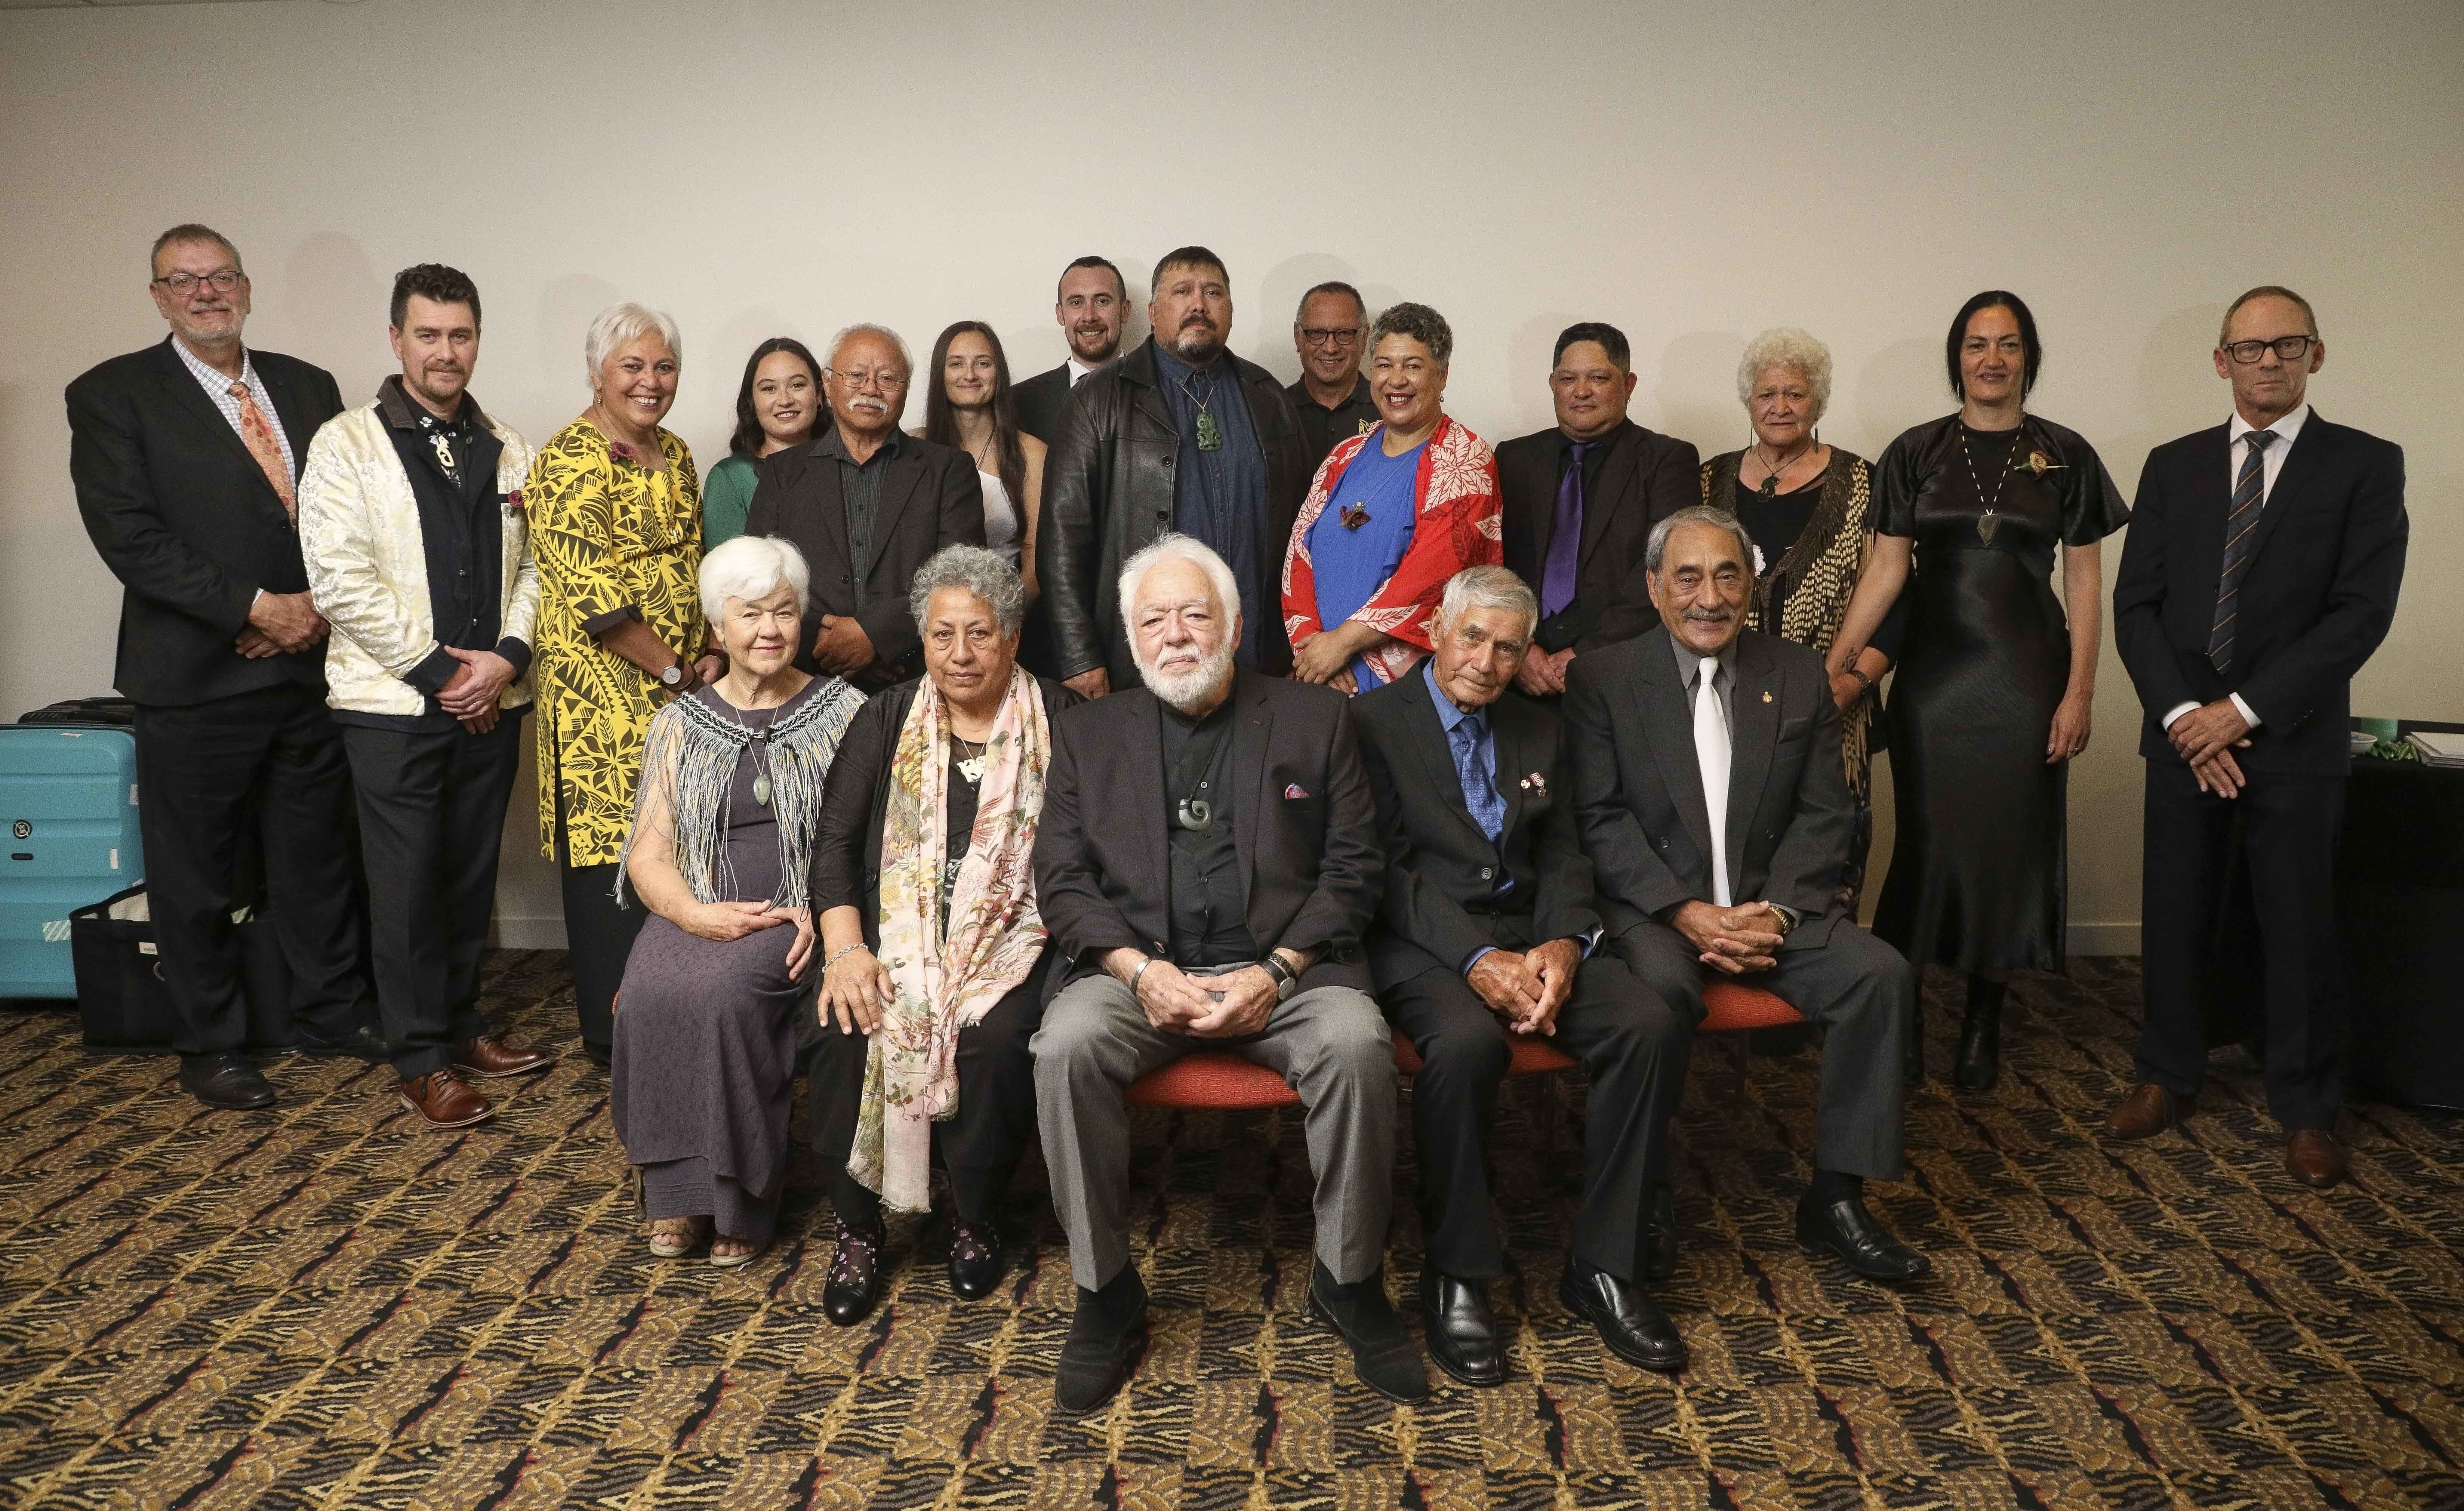 2019 Te Waka Toi Award recipients with members of the Arts Council of New Zealand Toi Aotrearoa.